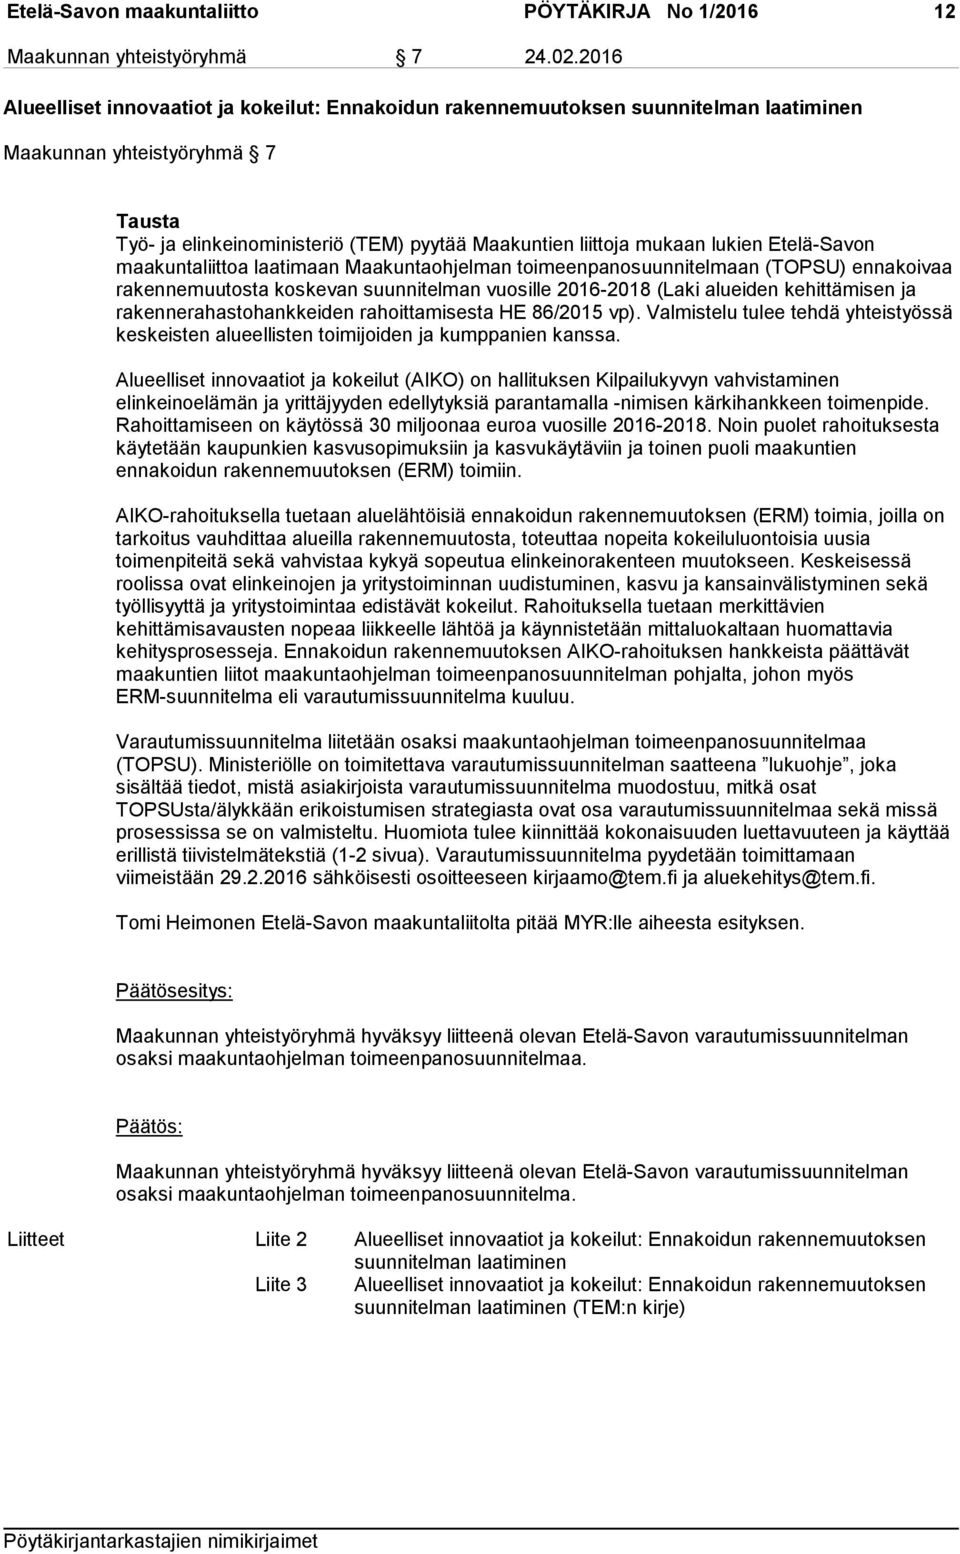 lukien Etelä-Savon maakuntaliittoa laatimaan Maakuntaohjelman toimeenpanosuunnitelmaan (TOPSU) ennakoivaa rakennemuutosta koskevan suunnitelman vuosille 2016-2018 (Laki alueiden kehittämisen ja